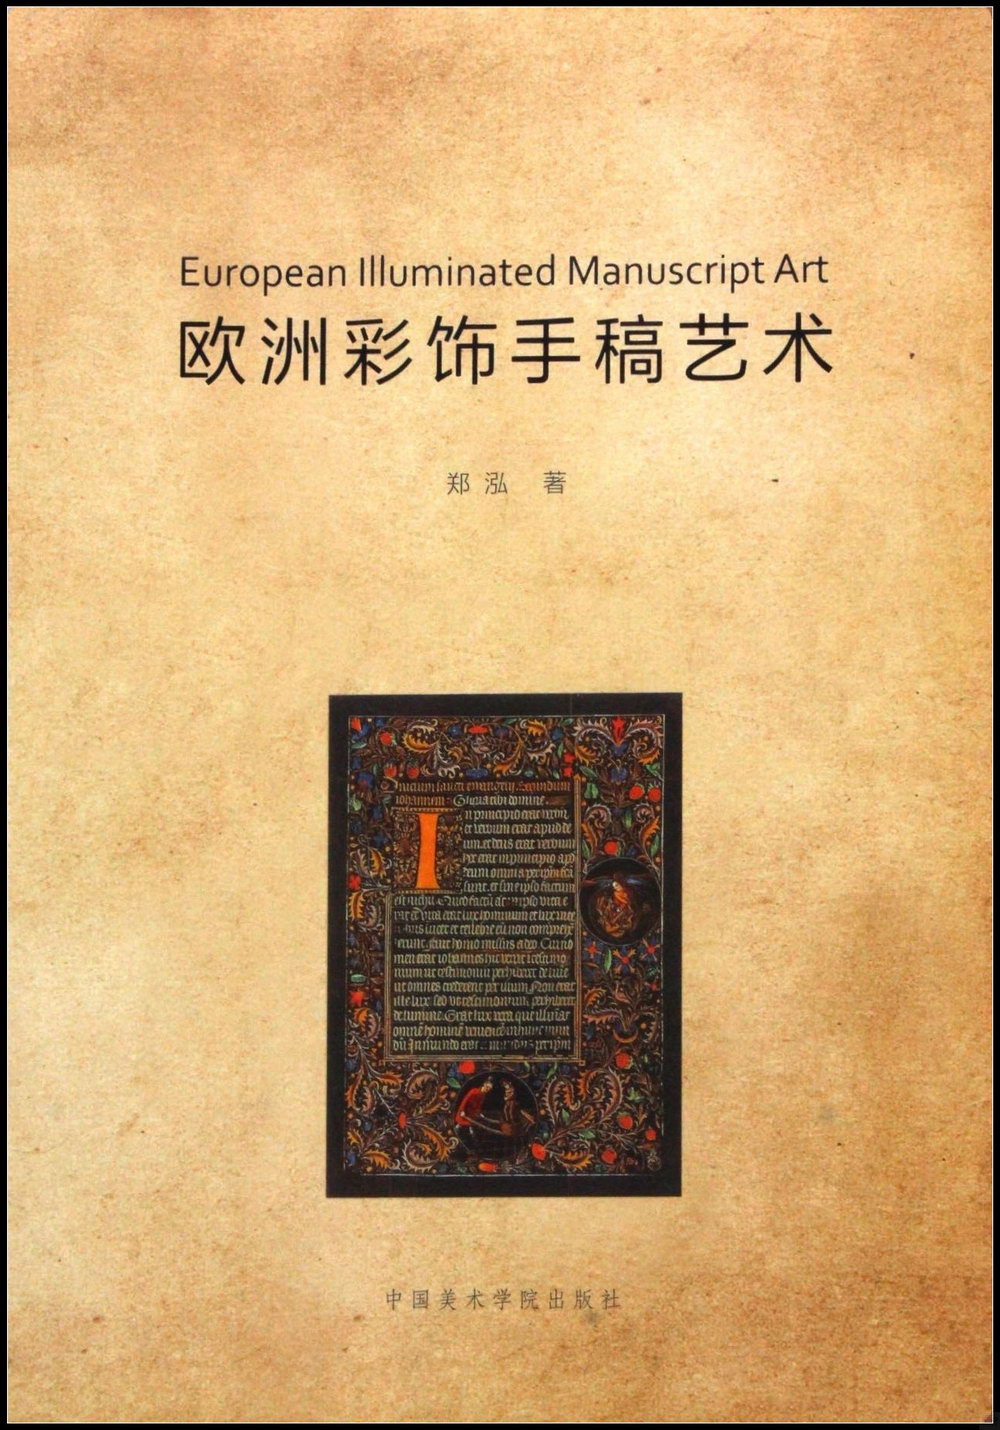 歐洲彩飾手稿藝術